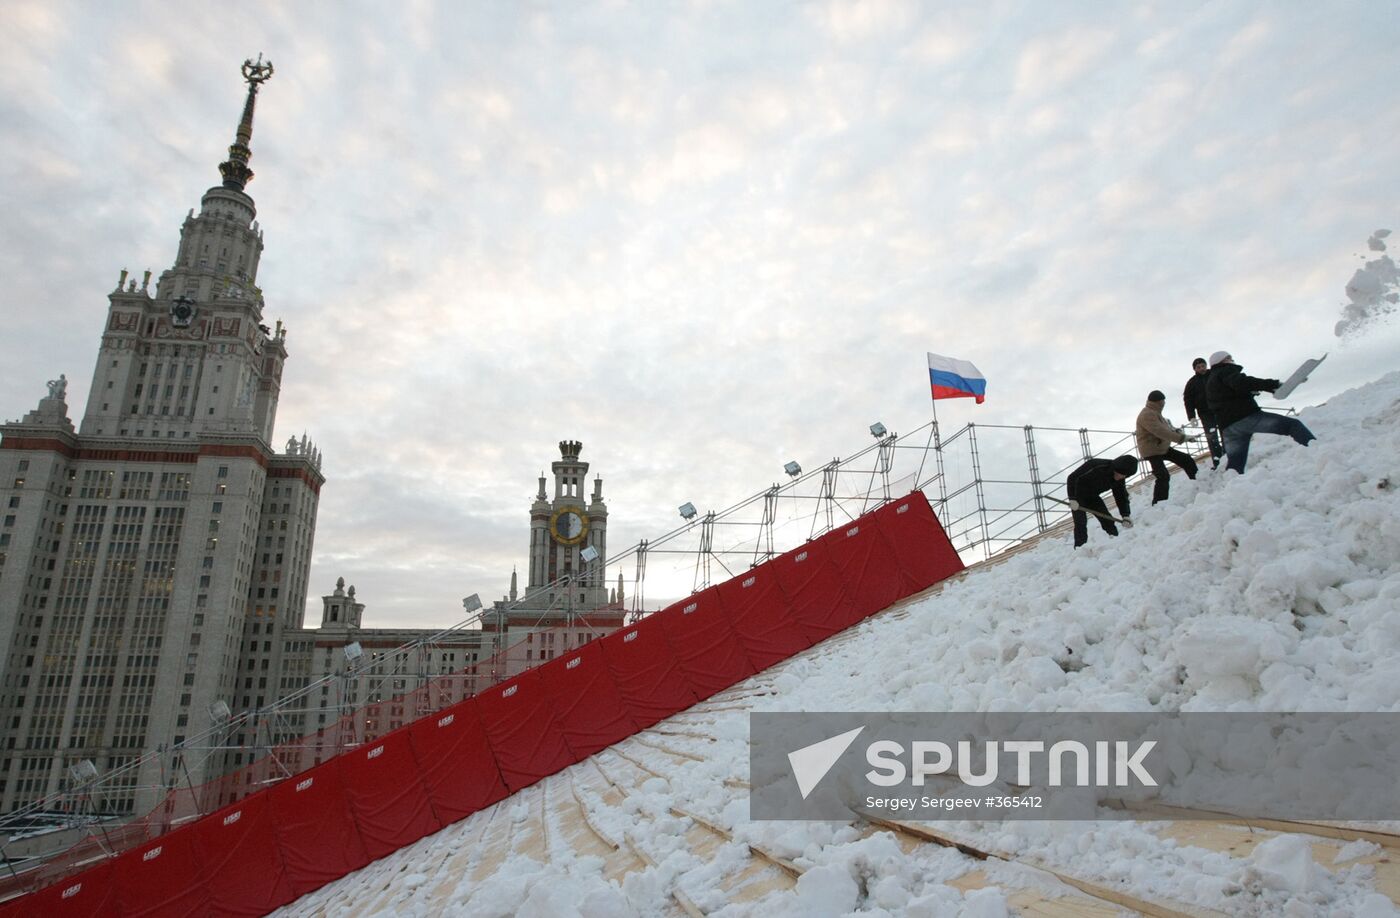 Installing a ski ramp on Vorobyovy Gory